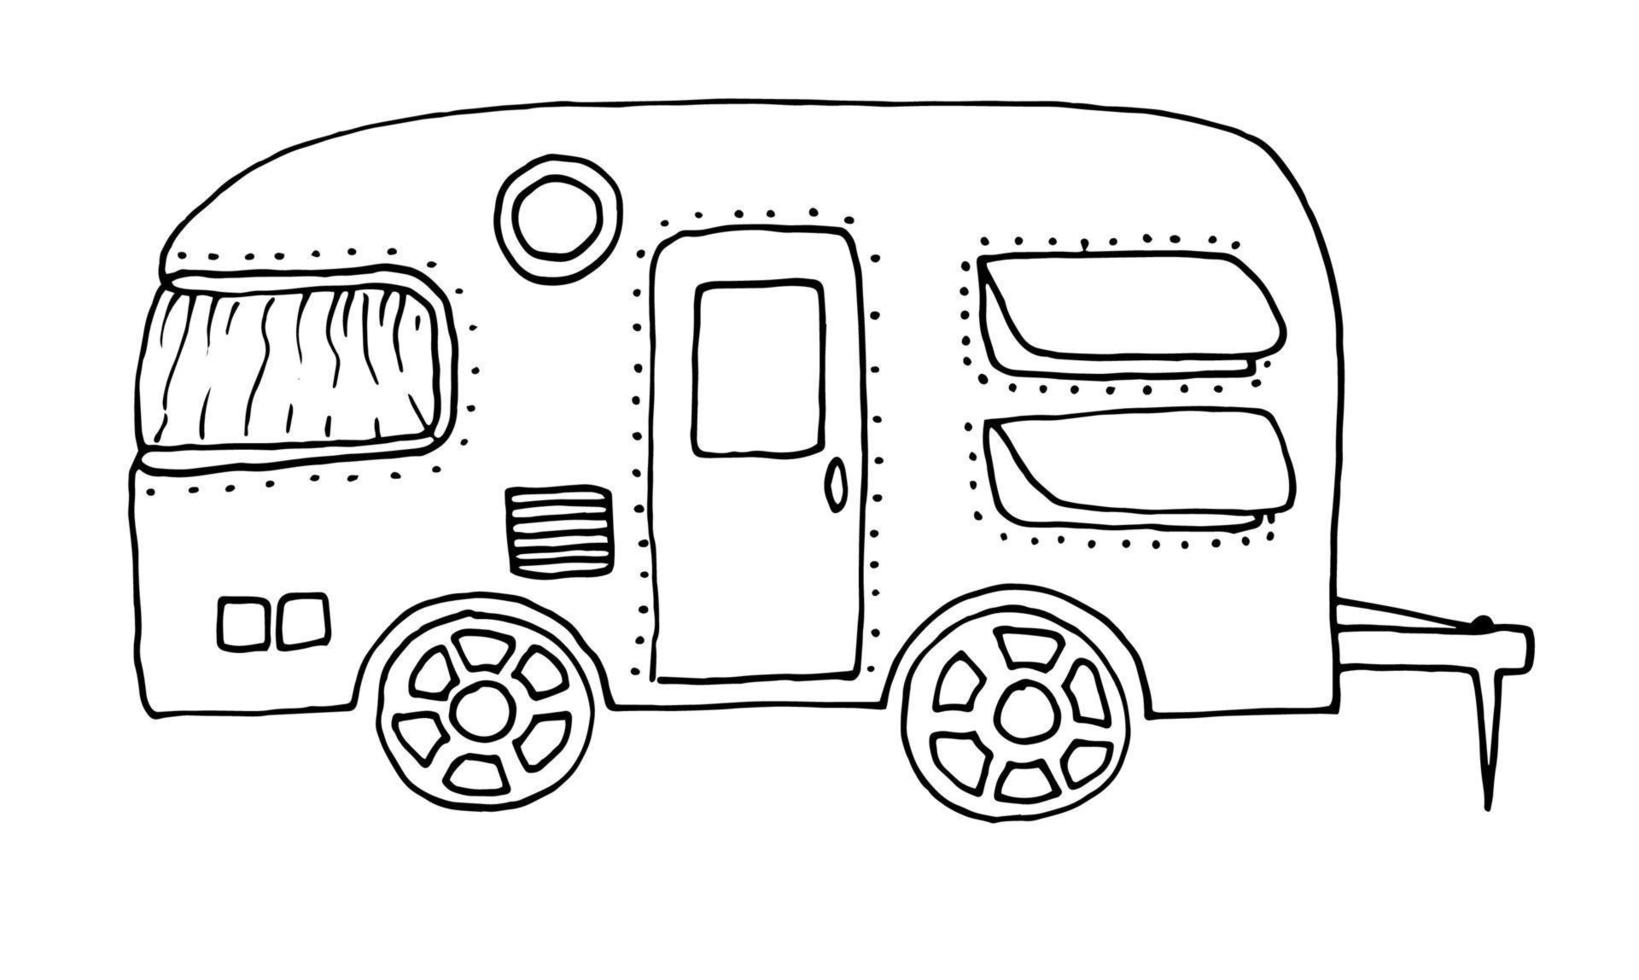 autocaravana, veículo recreativo, veículos, autocaravana, carrinhas, caravanas. ilustração vetorial desenhada à mão em estilo de contorno doodle vetor